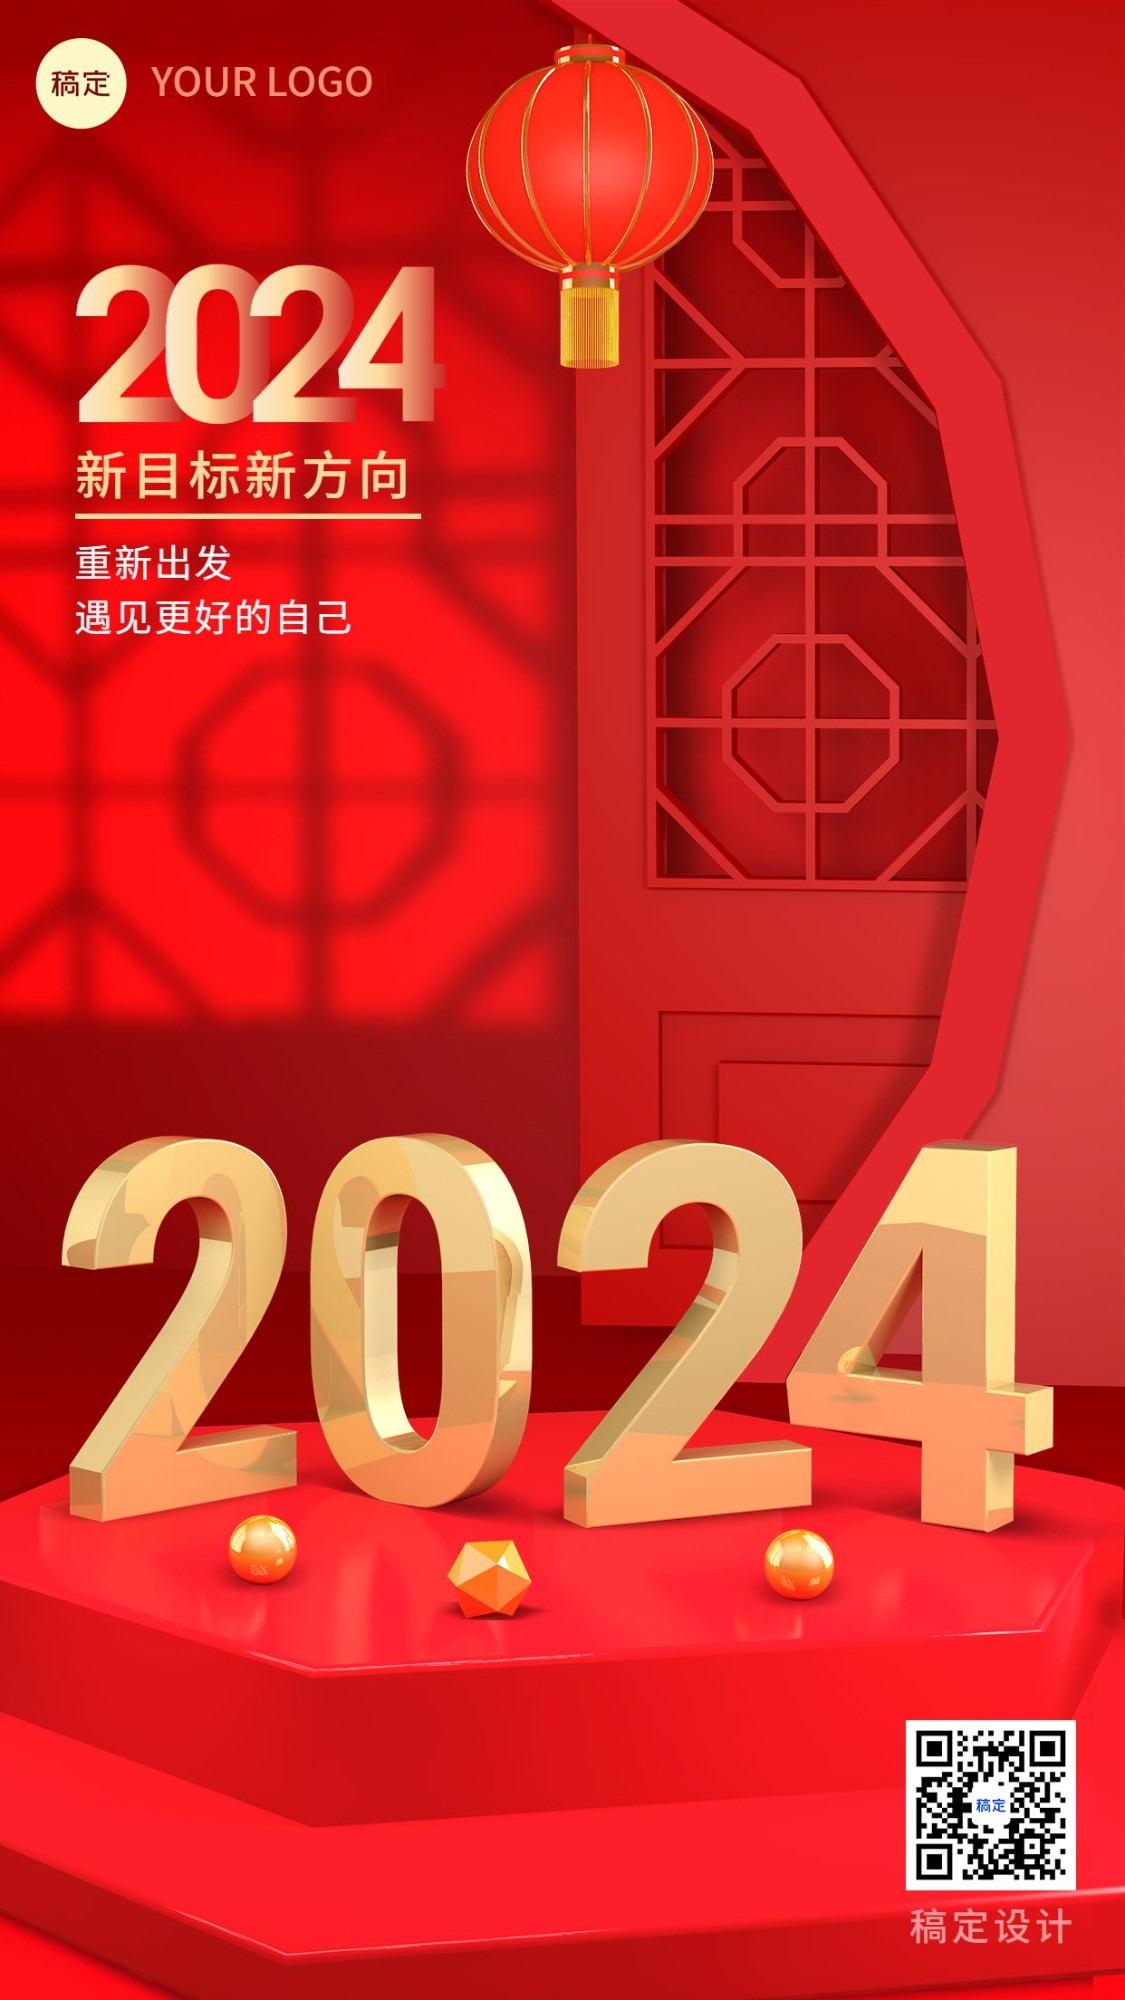 新年元旦节日祝福3d手机海报